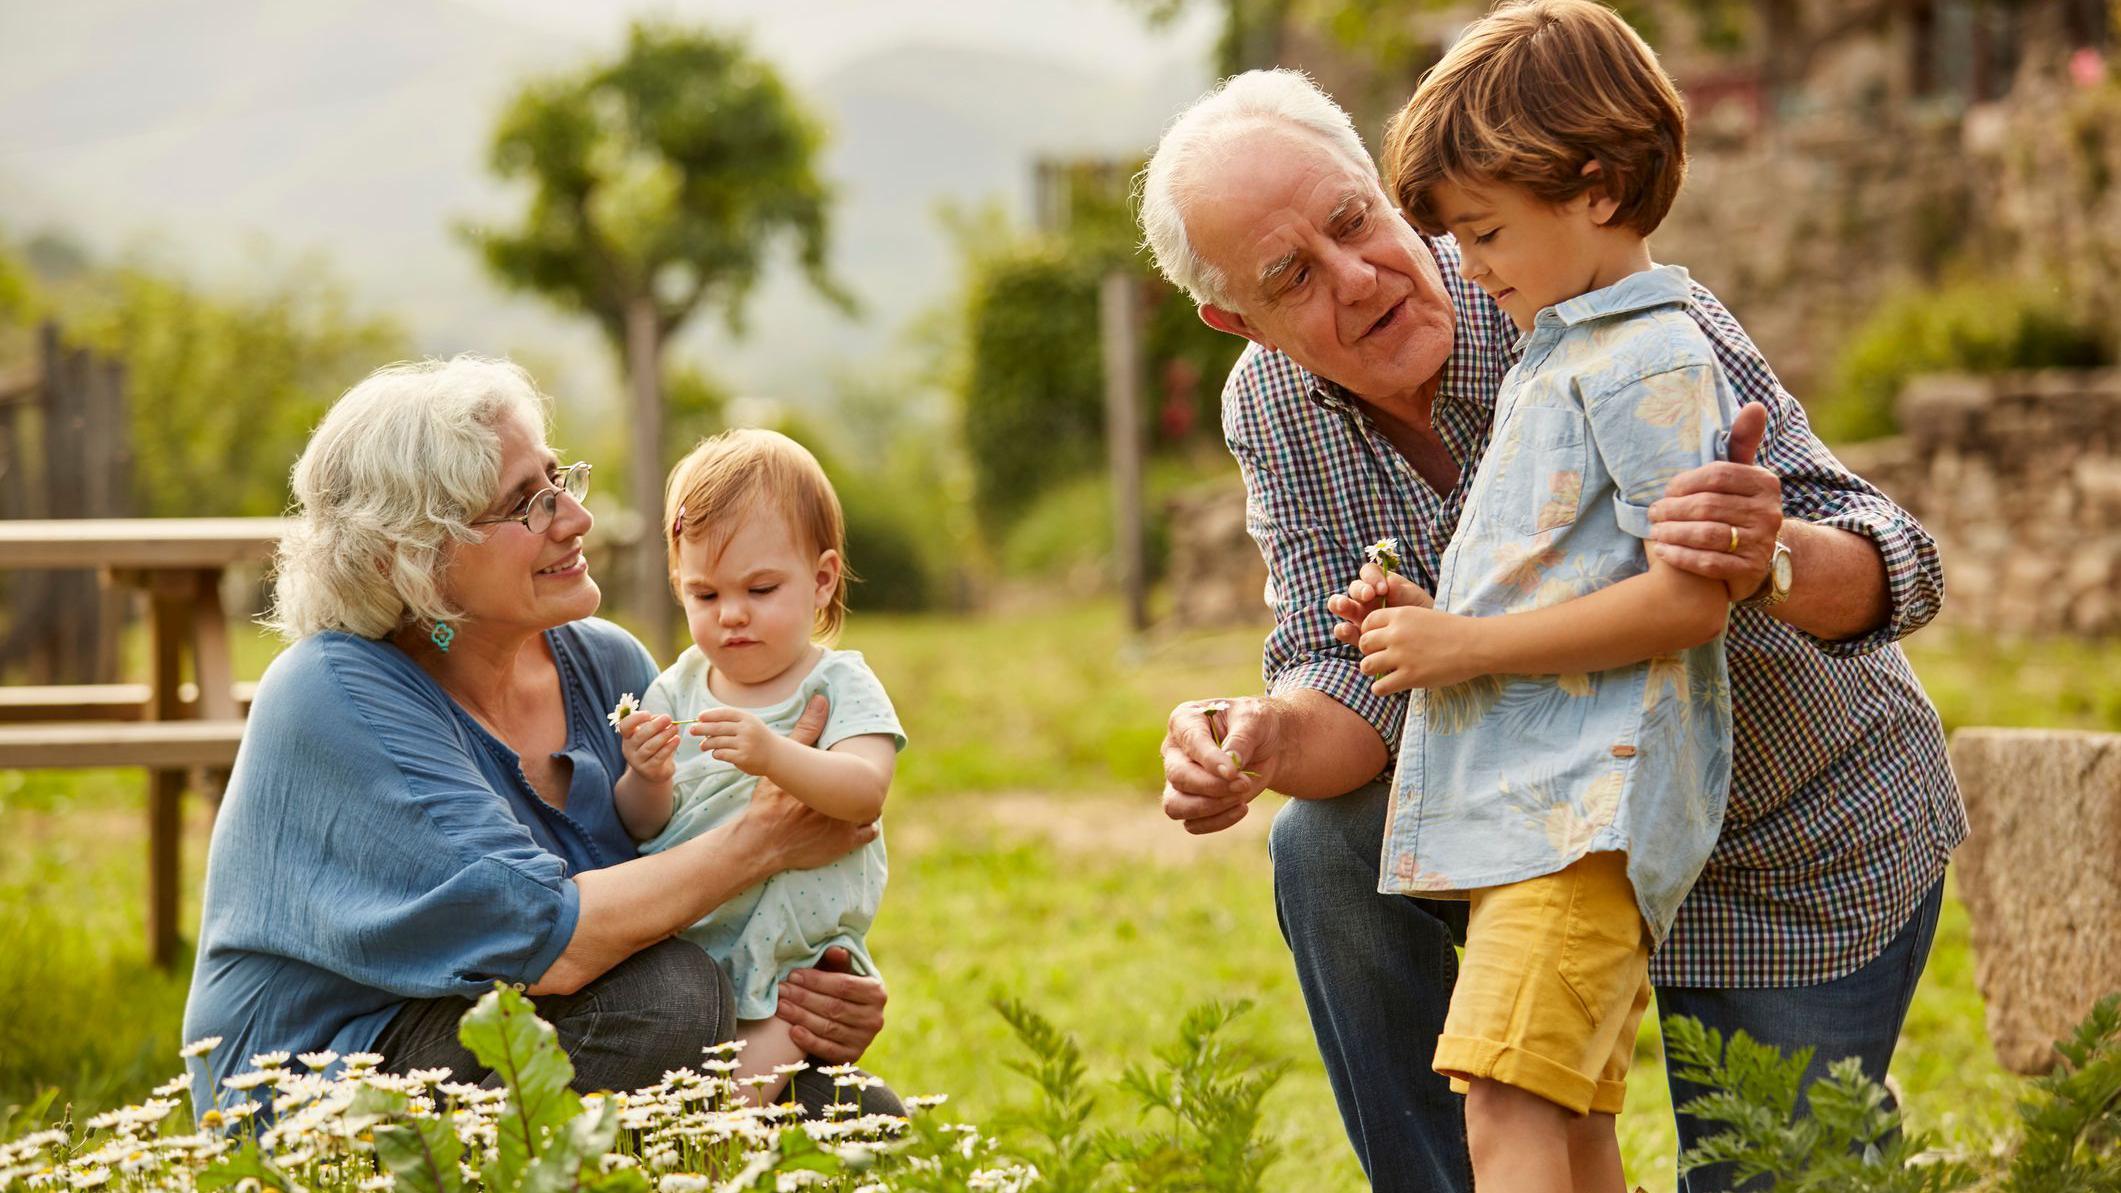 المشاركة في رعاية الأحفاد قد يكون لها فوائد صحية لكبار السن